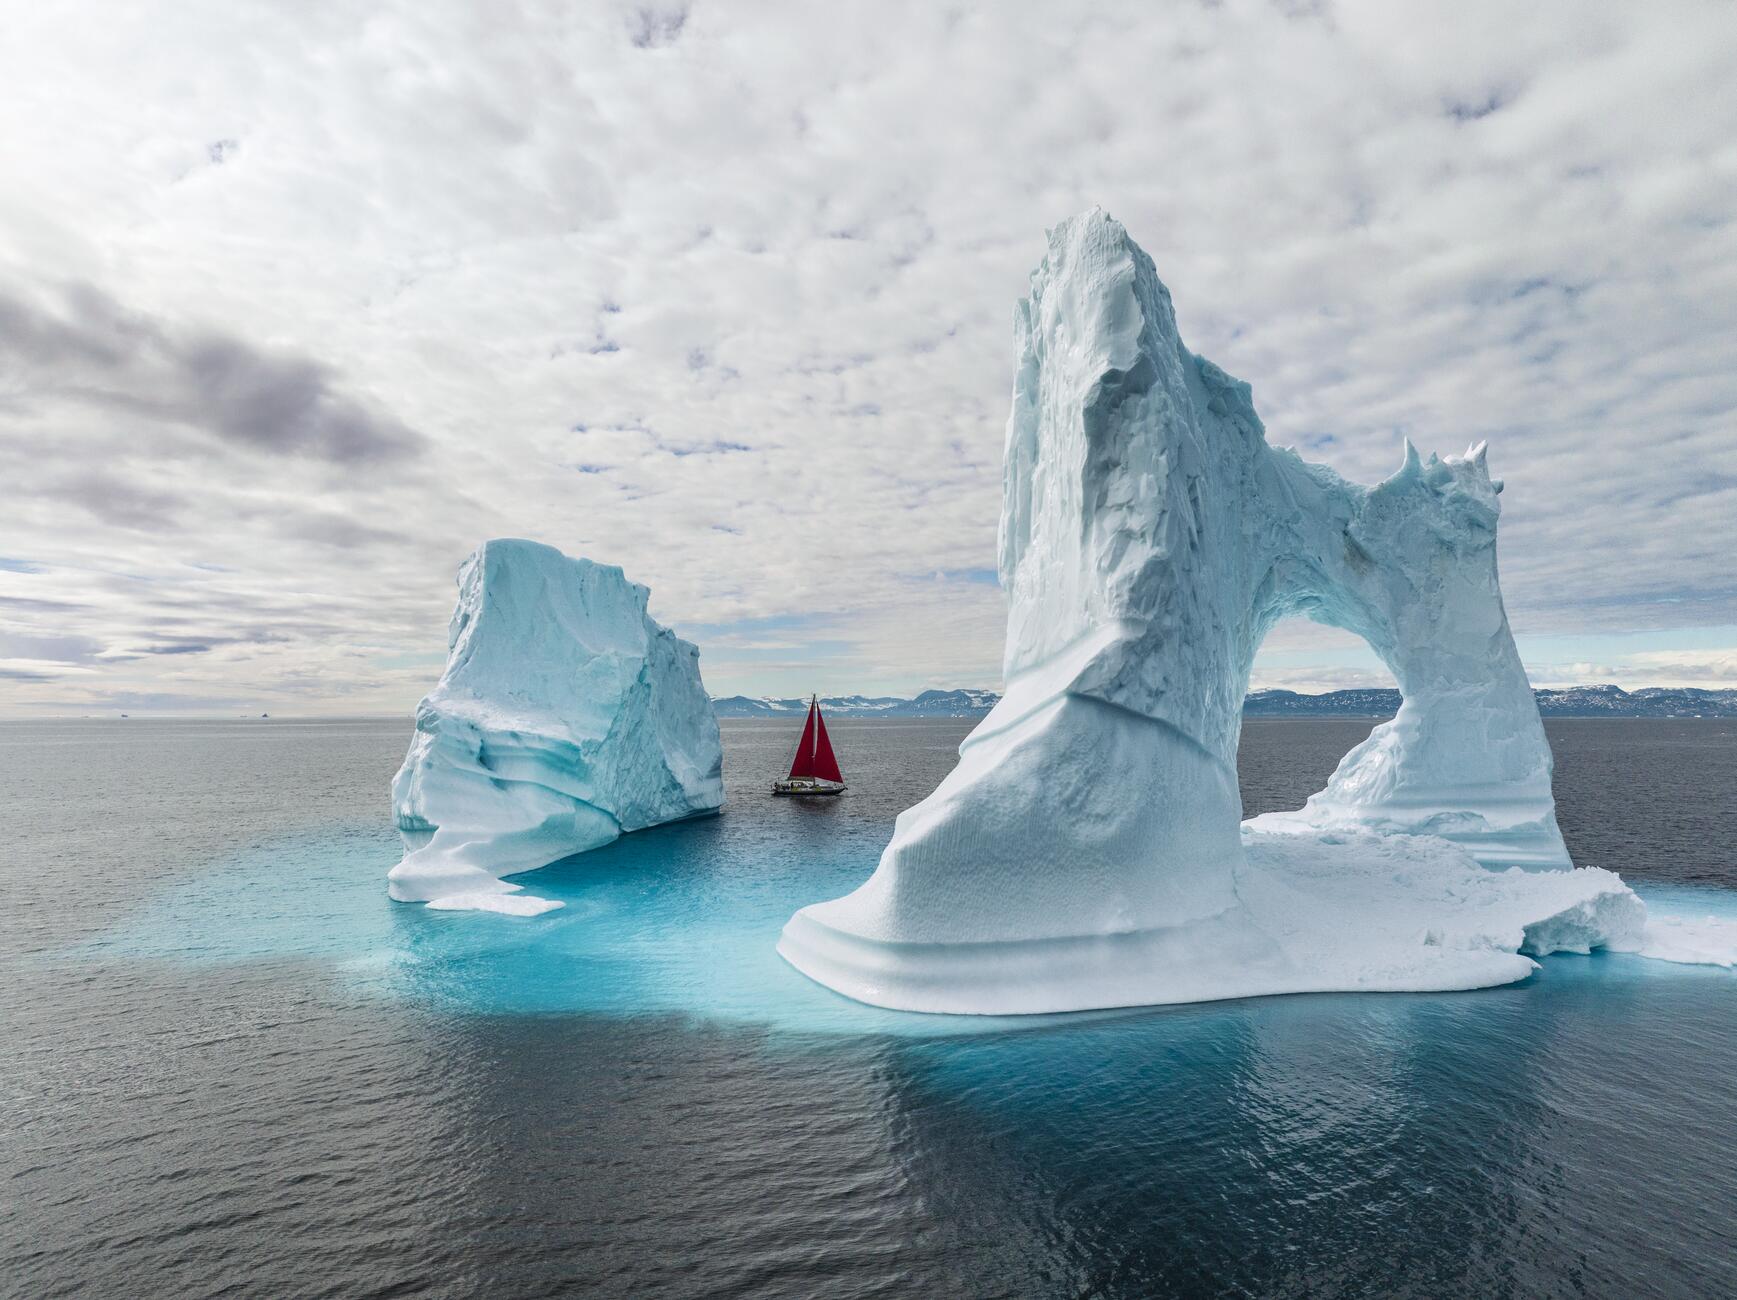 Фотография парусника с красными парусами, который плывет между двумя очень большими айсбергами. Один айсберг напоминает арку с разрывом посередине